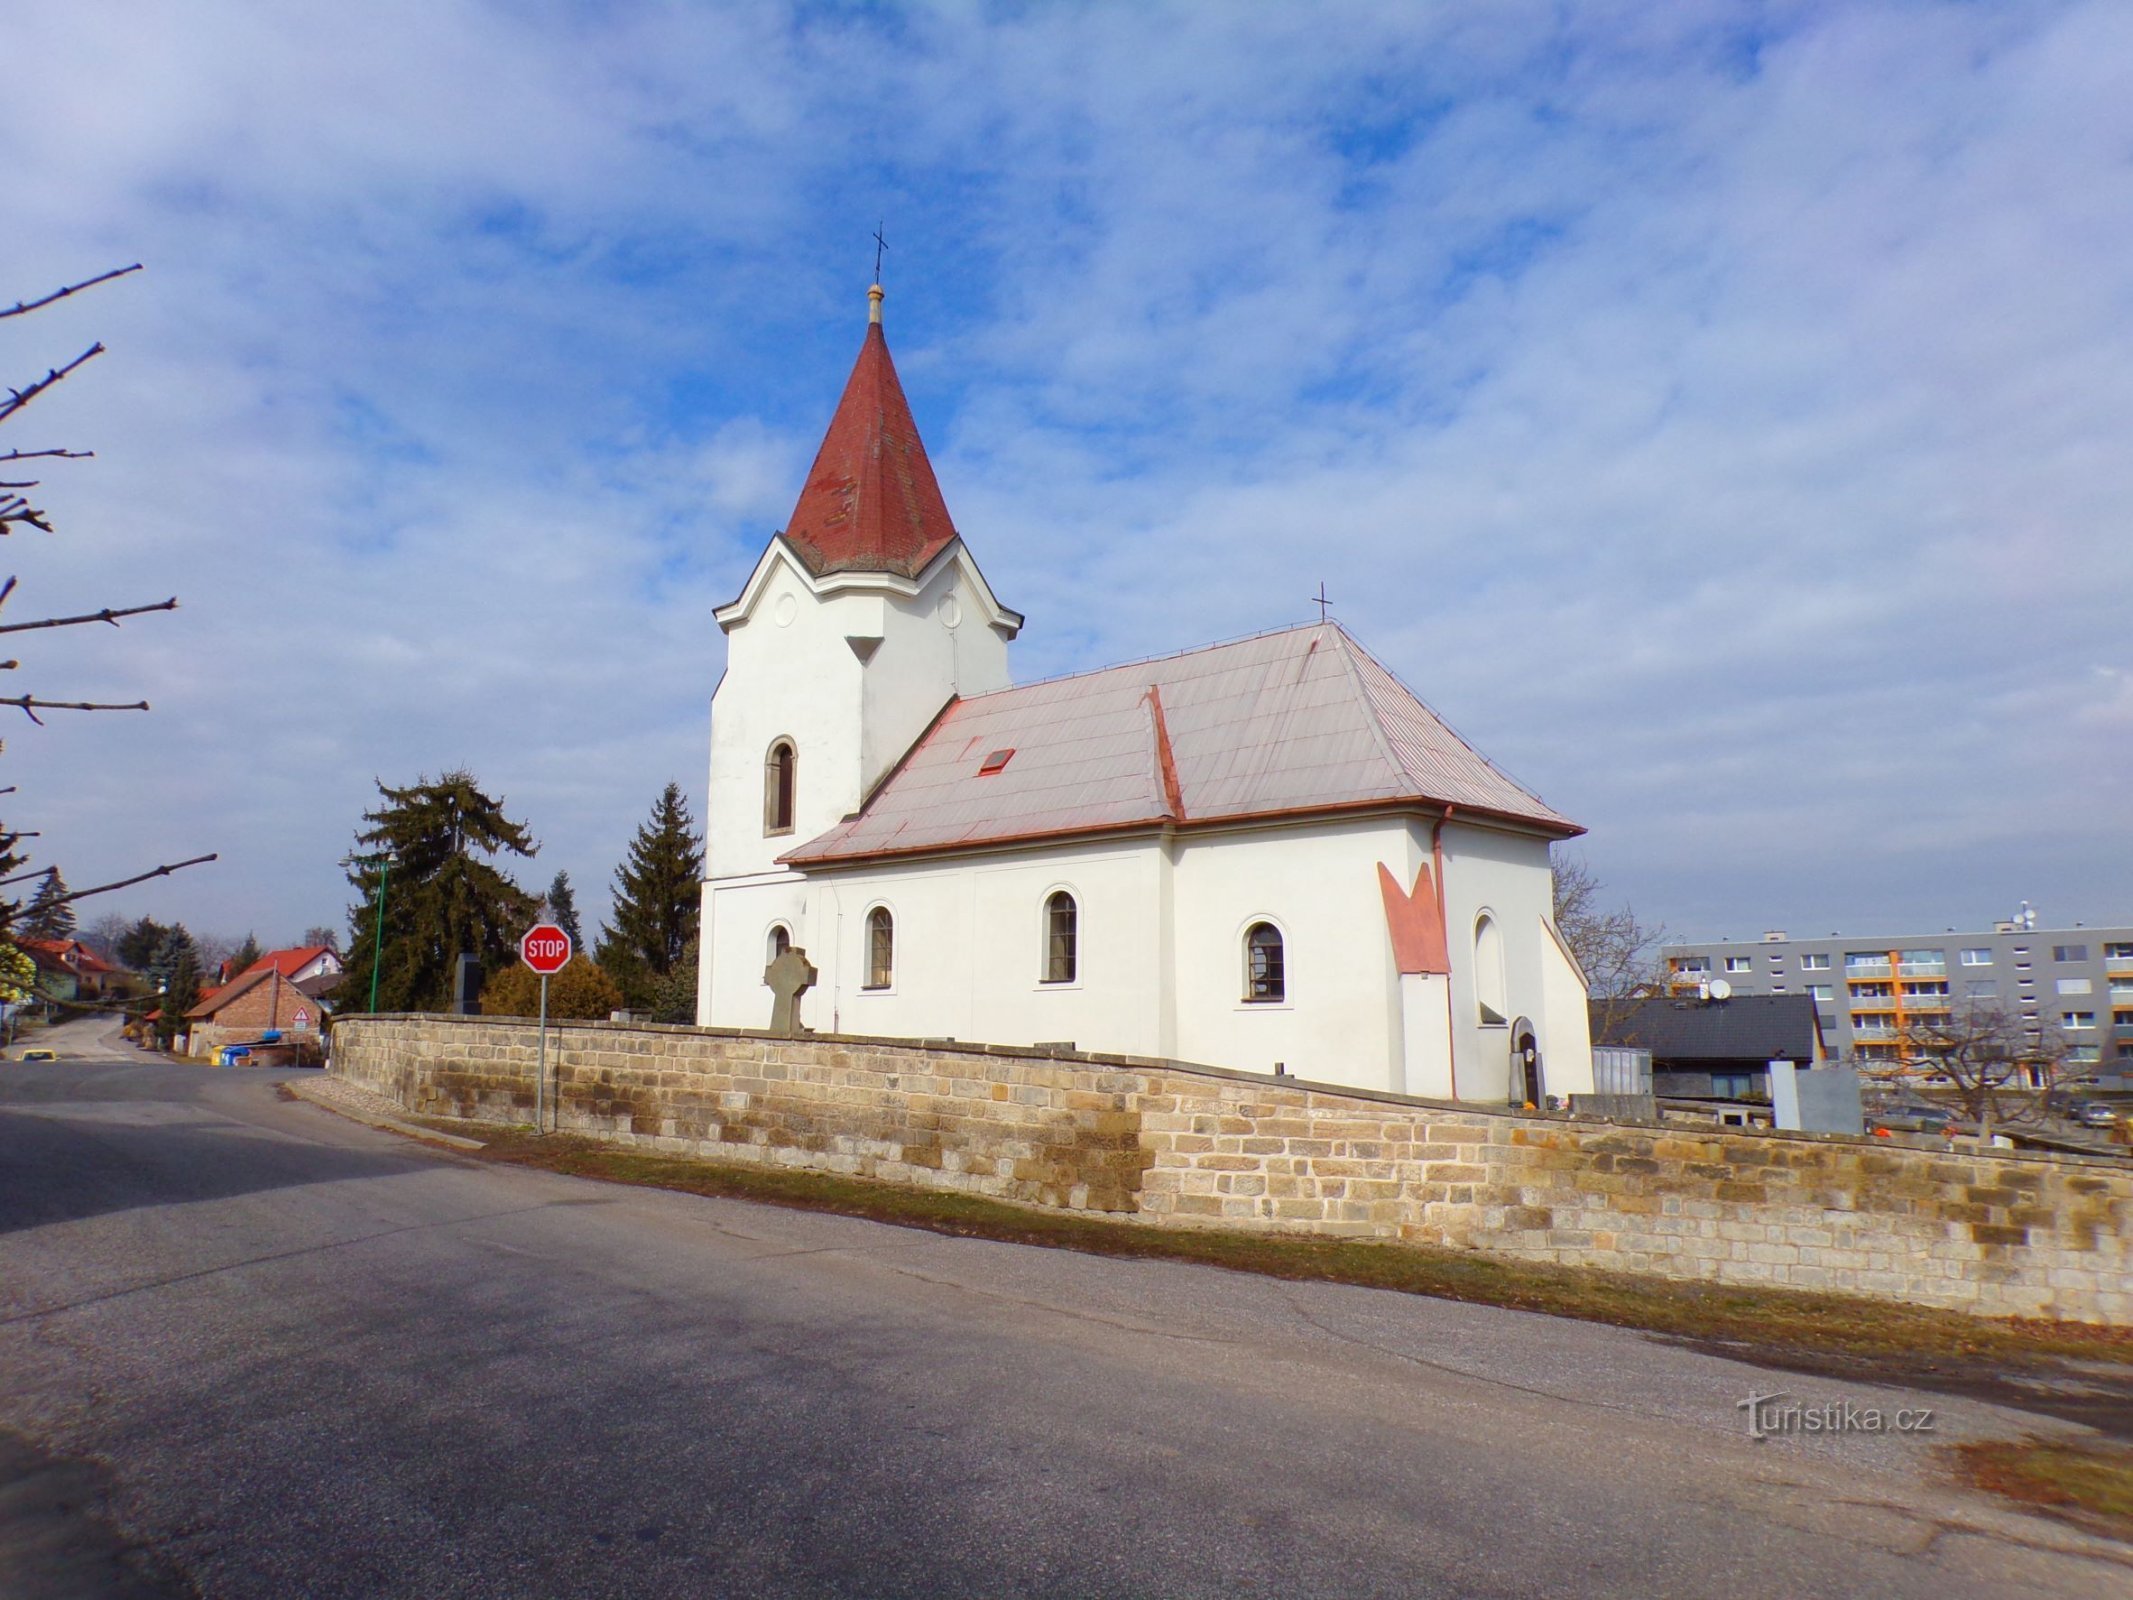 圣教堂František Serafinský（老地方，3.3.2022 年 XNUMX 月 XNUMX 日）